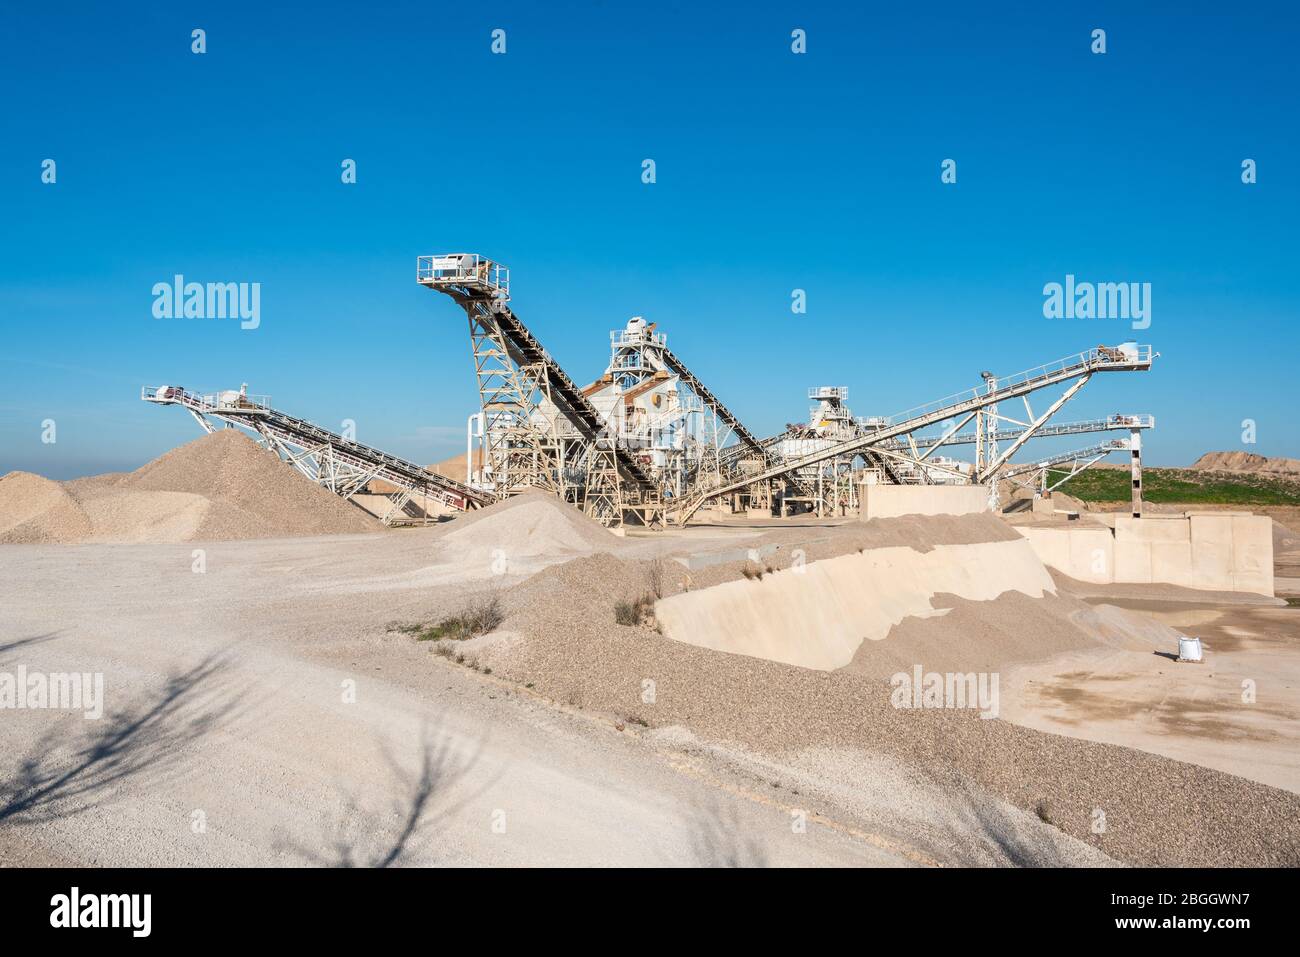 19 février 2020 - Belianes-Preixana, Espagne. Une fosse Gravel avec de la machinerie lourde sur le bord DU SPA (zone protégée spéciale) Belianes-Preixana. Banque D'Images